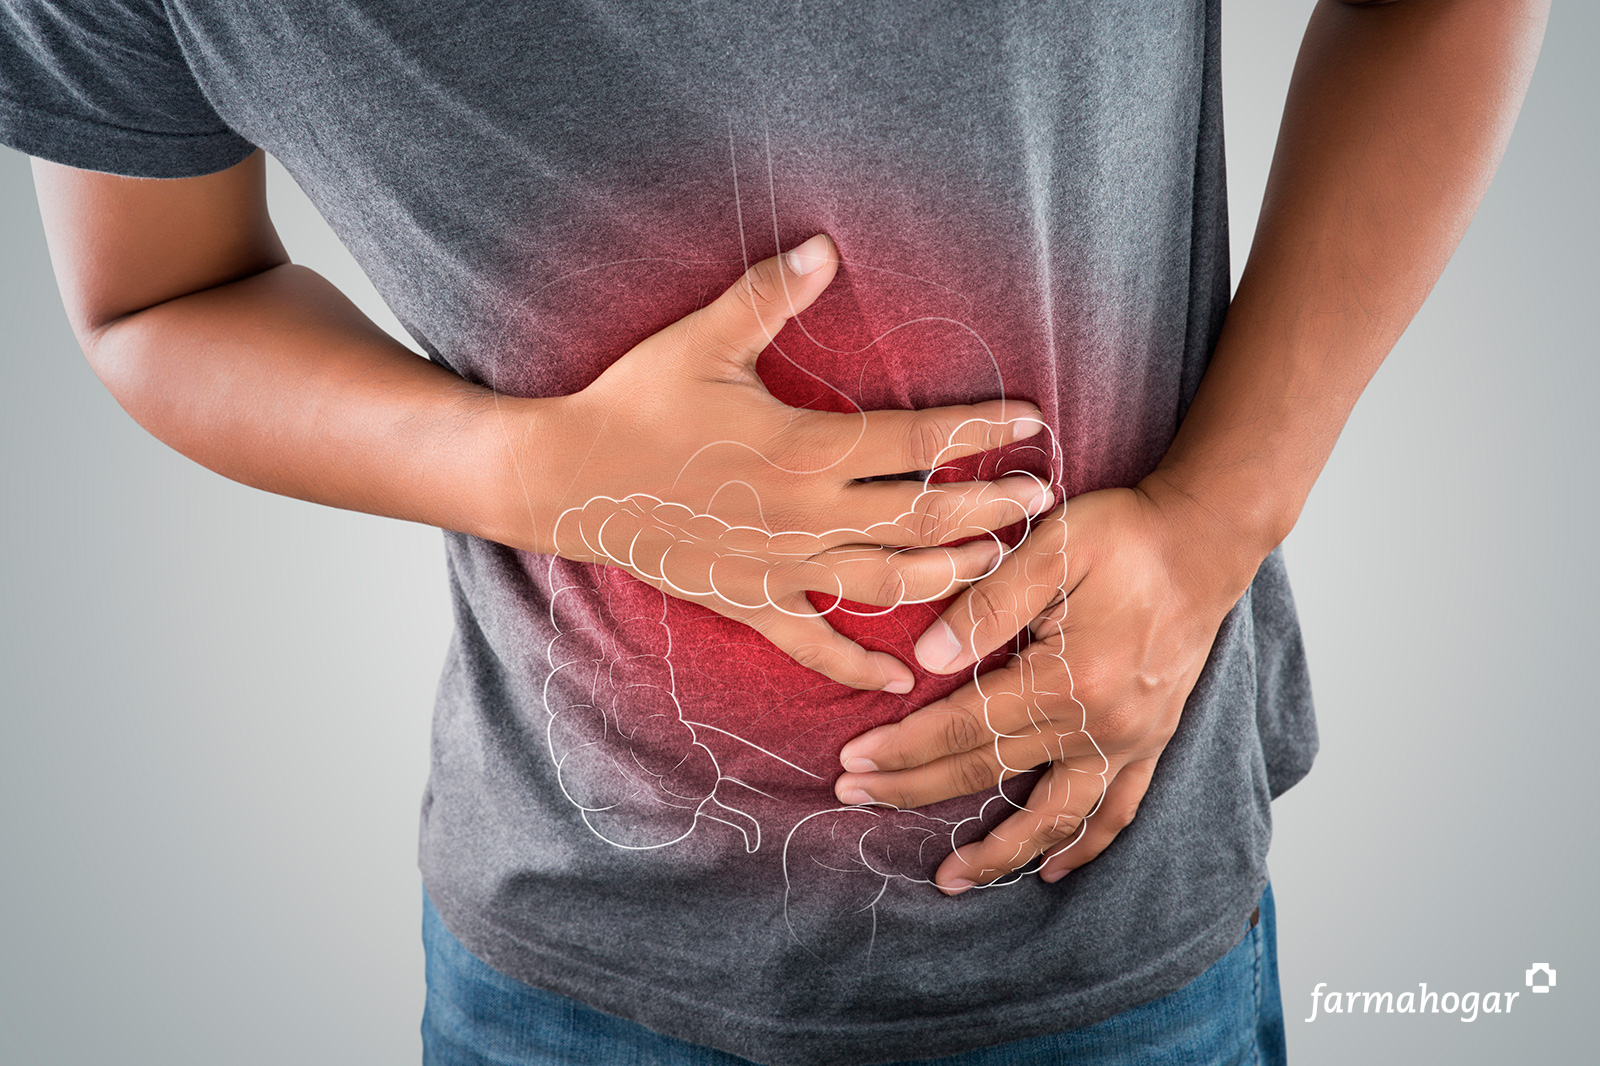 Síntomas y causas del colon irritable